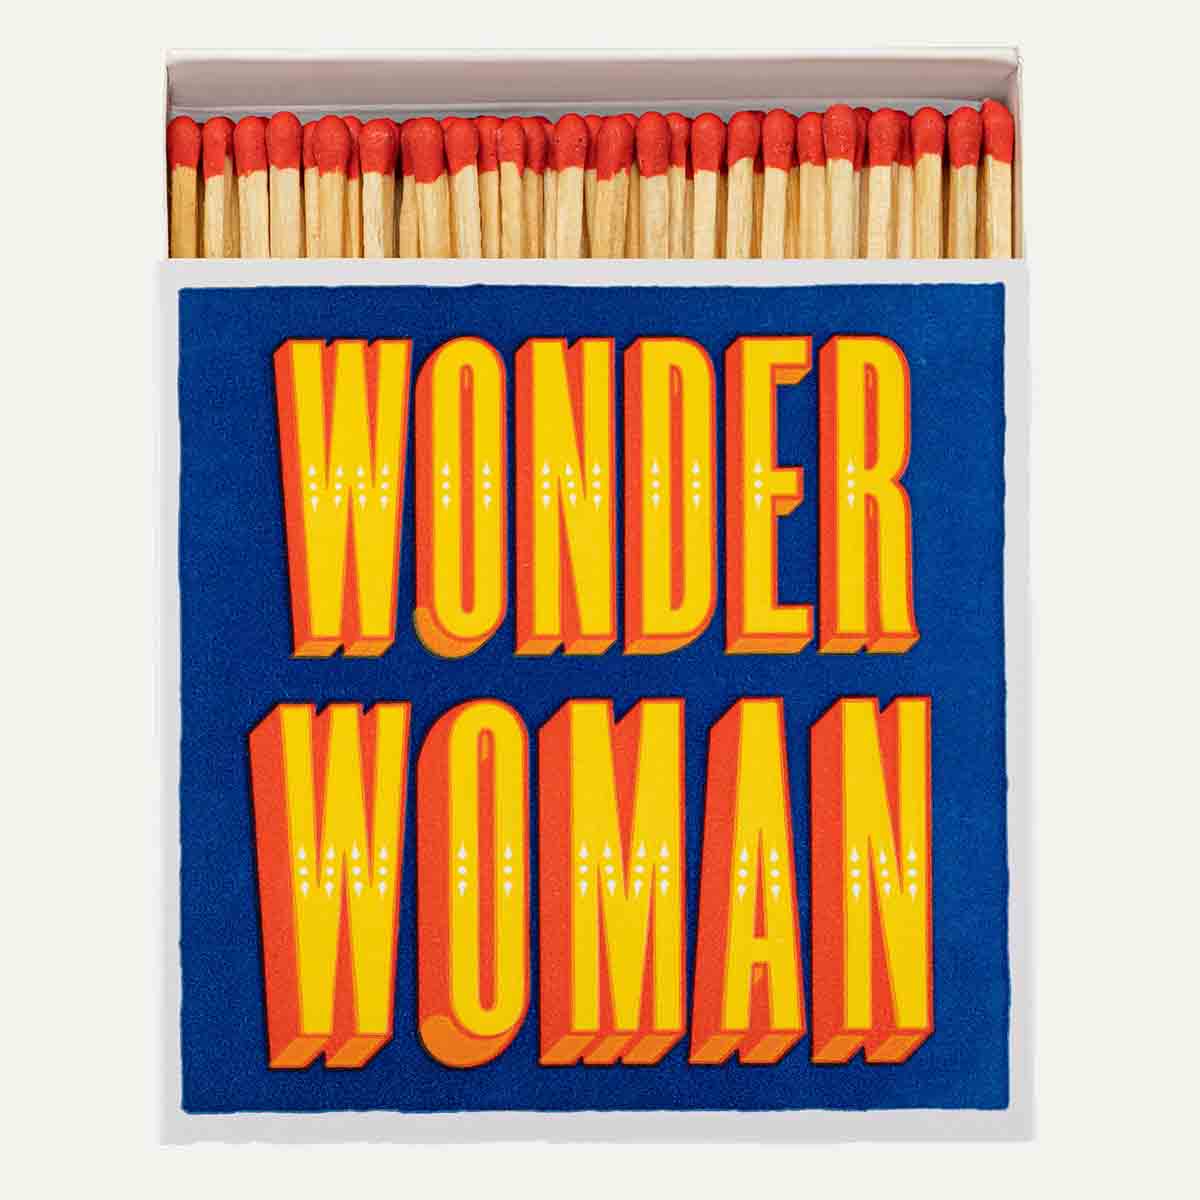 Archivist Wonder Woman Safety Matches